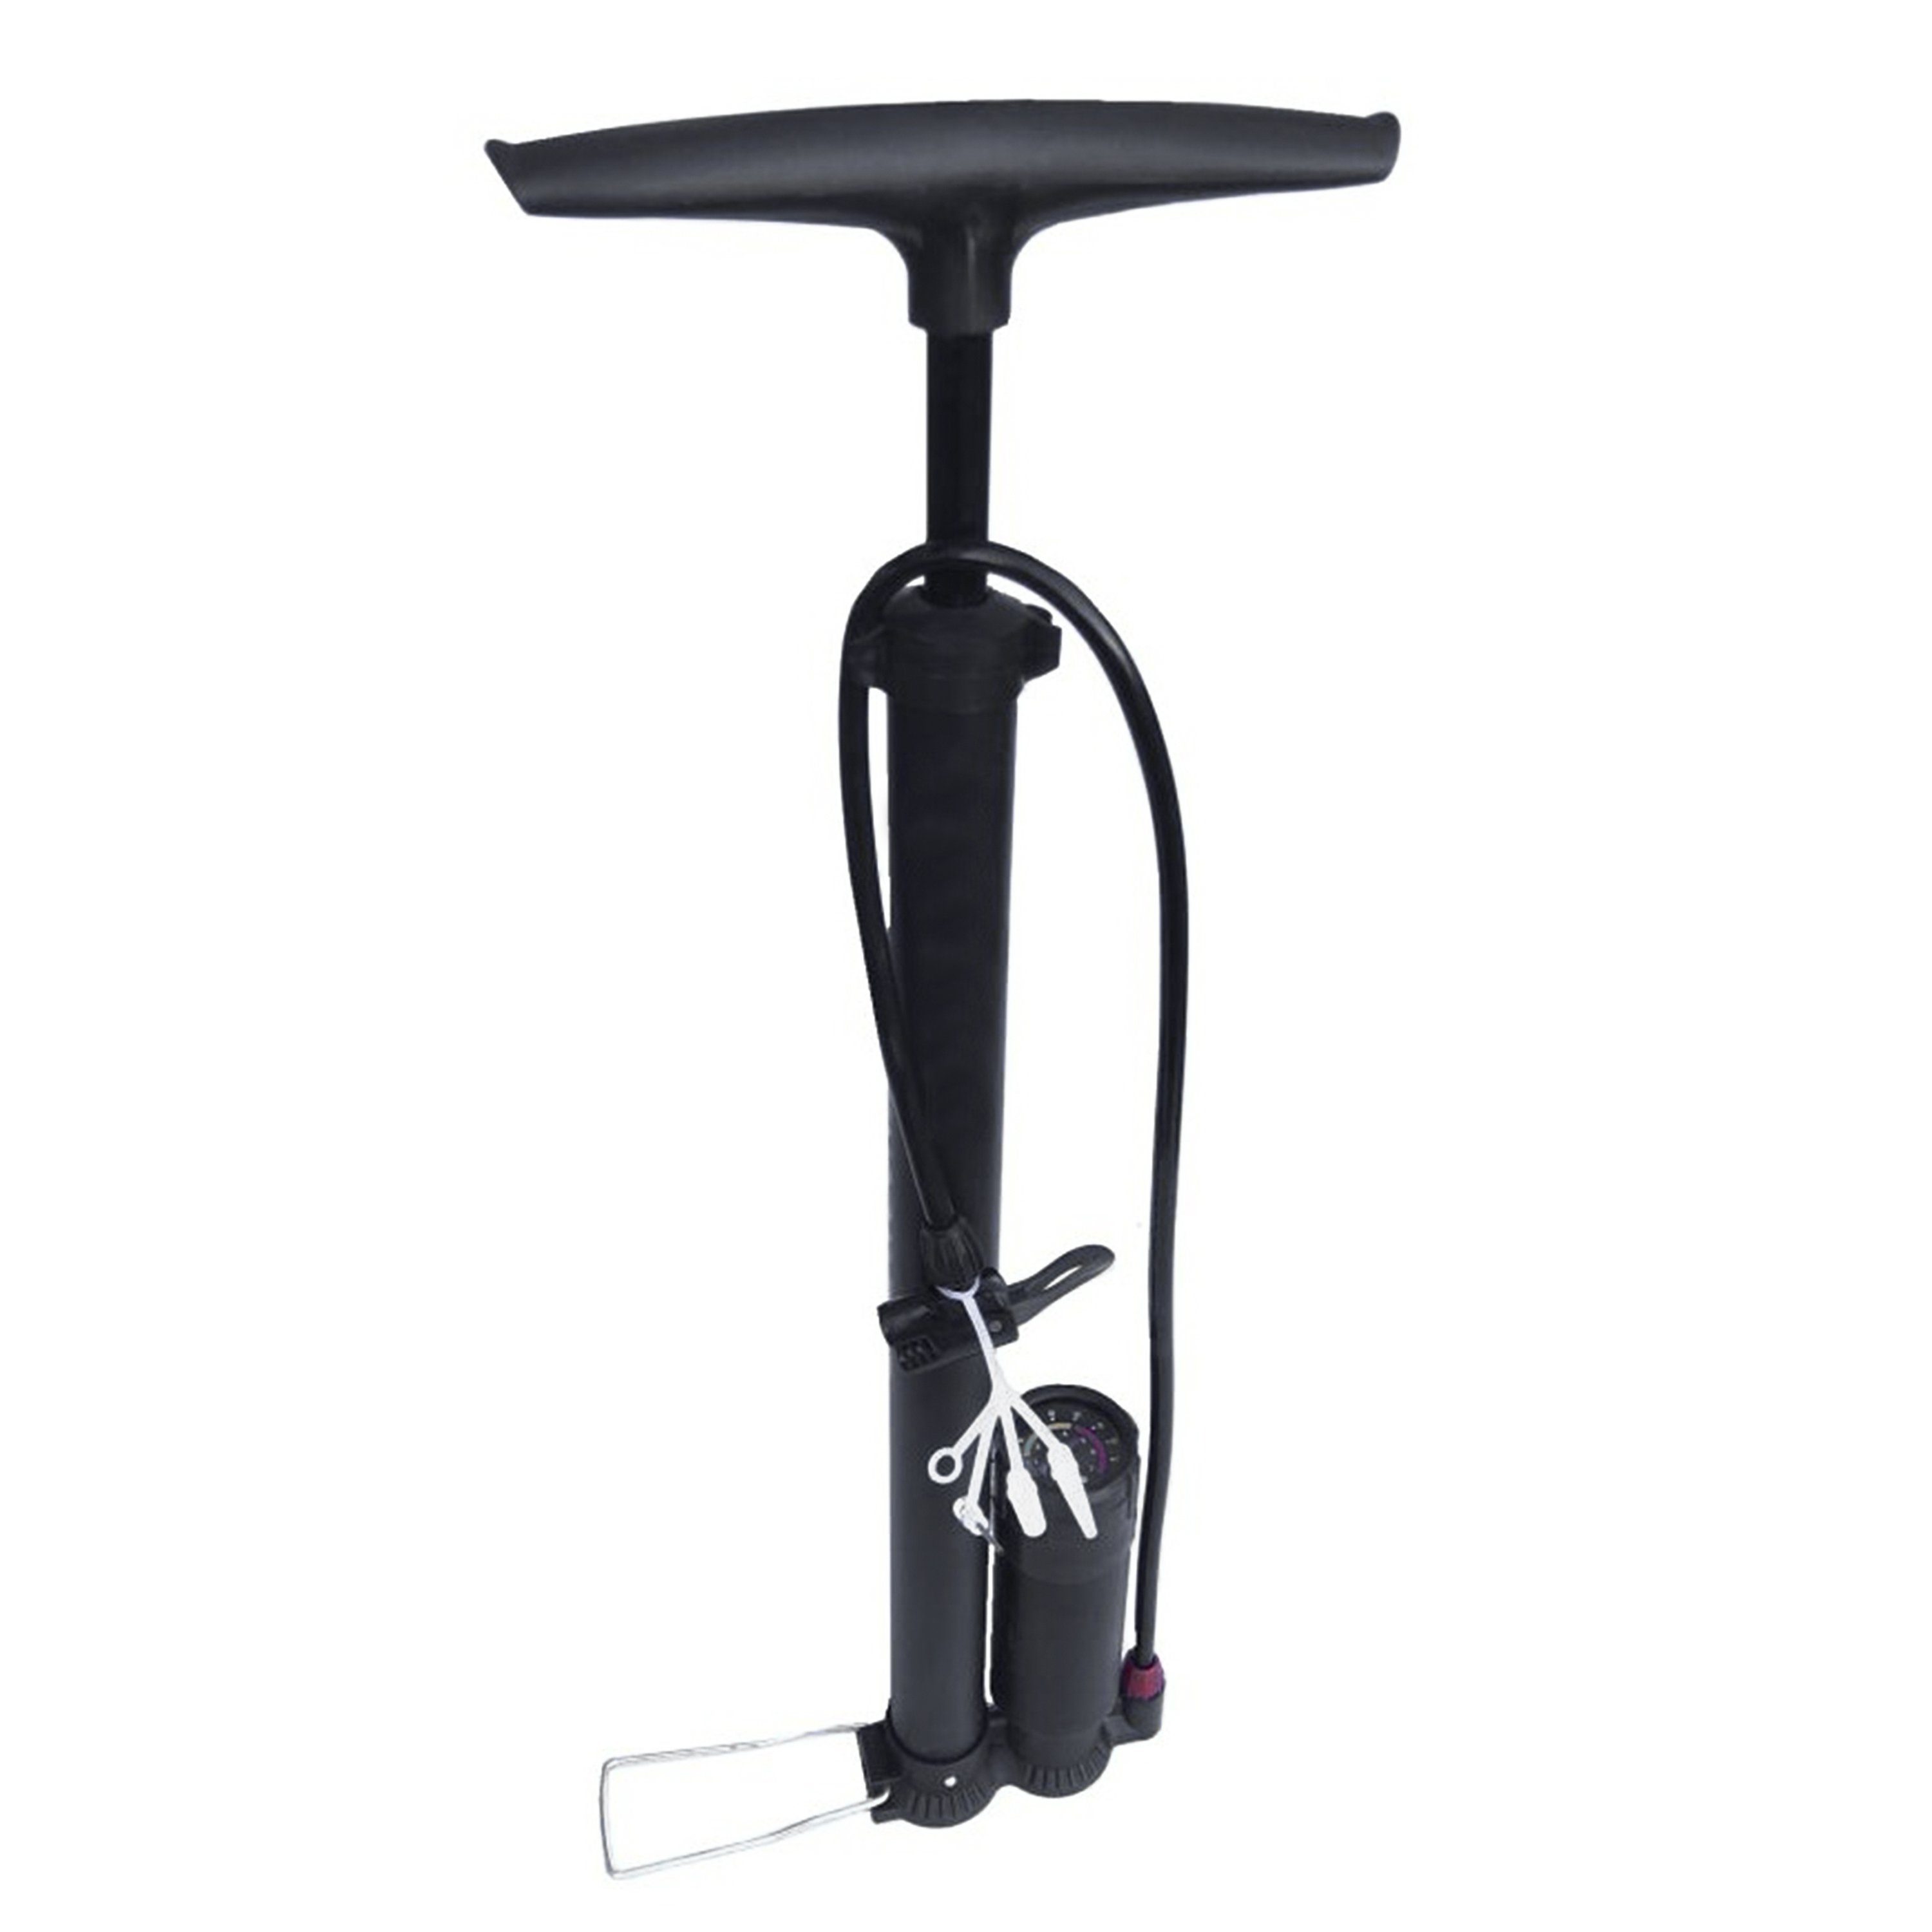 H-basics Fahrradpumpe Fahrradpumpe mit Manometer - Luftpumpe, Standpumpe  mit Manometer, Handpumpe für alle Ventile, Französisches Ventil, für Bike,  Reifen, Ball, Luftkissen